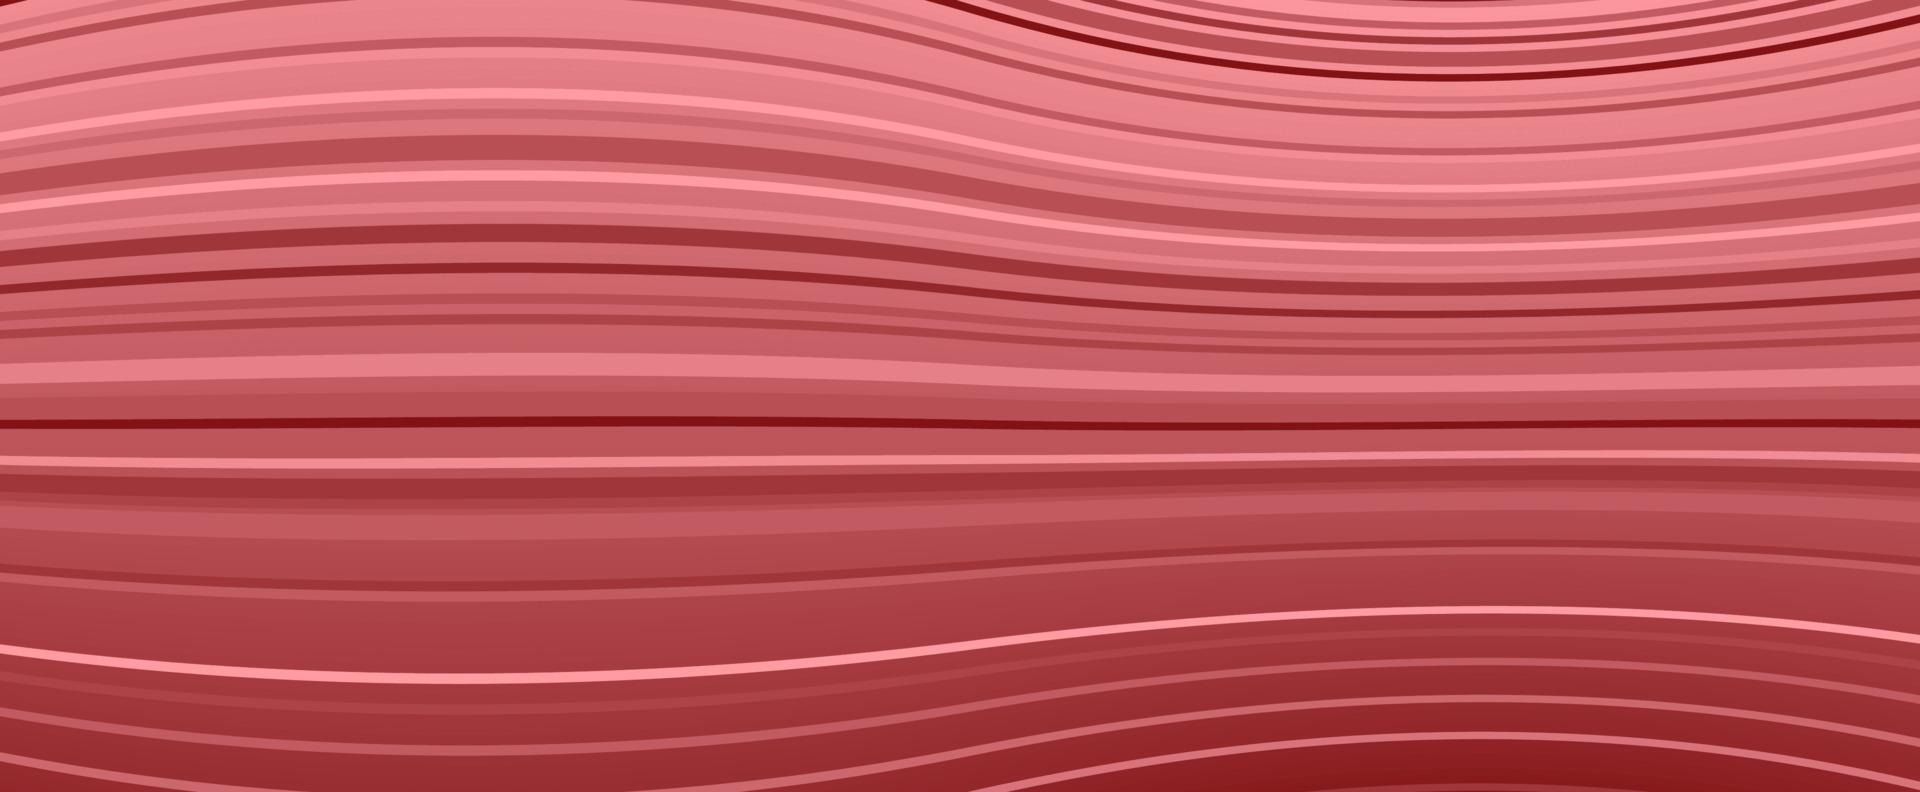 fond de vecteur de rayures rouges sous forme d'espace déformé